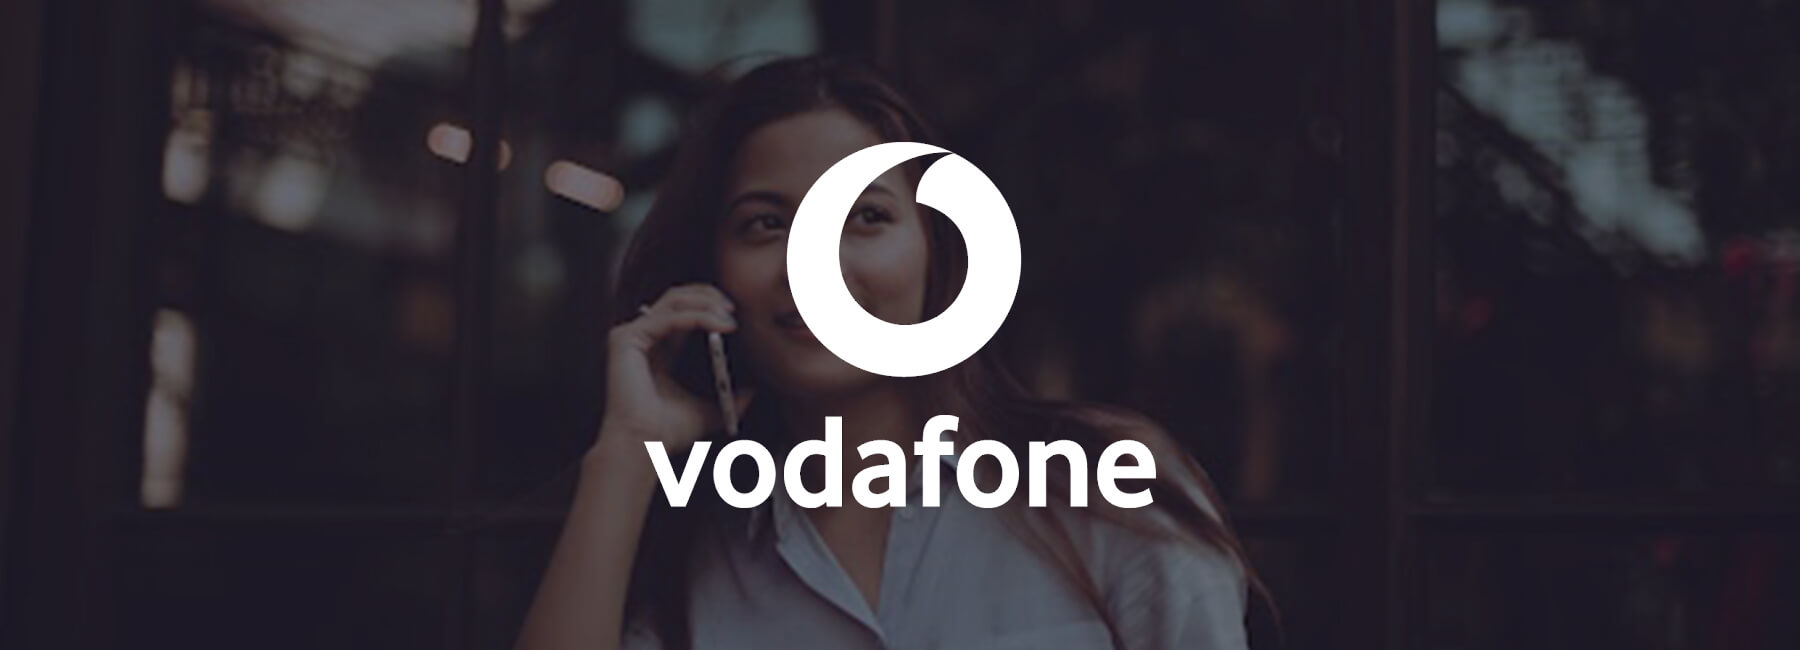 Vodafone Irlande déploie sa stratégie d’entreprise centrée sur le client sur l’ensemble de ses canaux digitaux